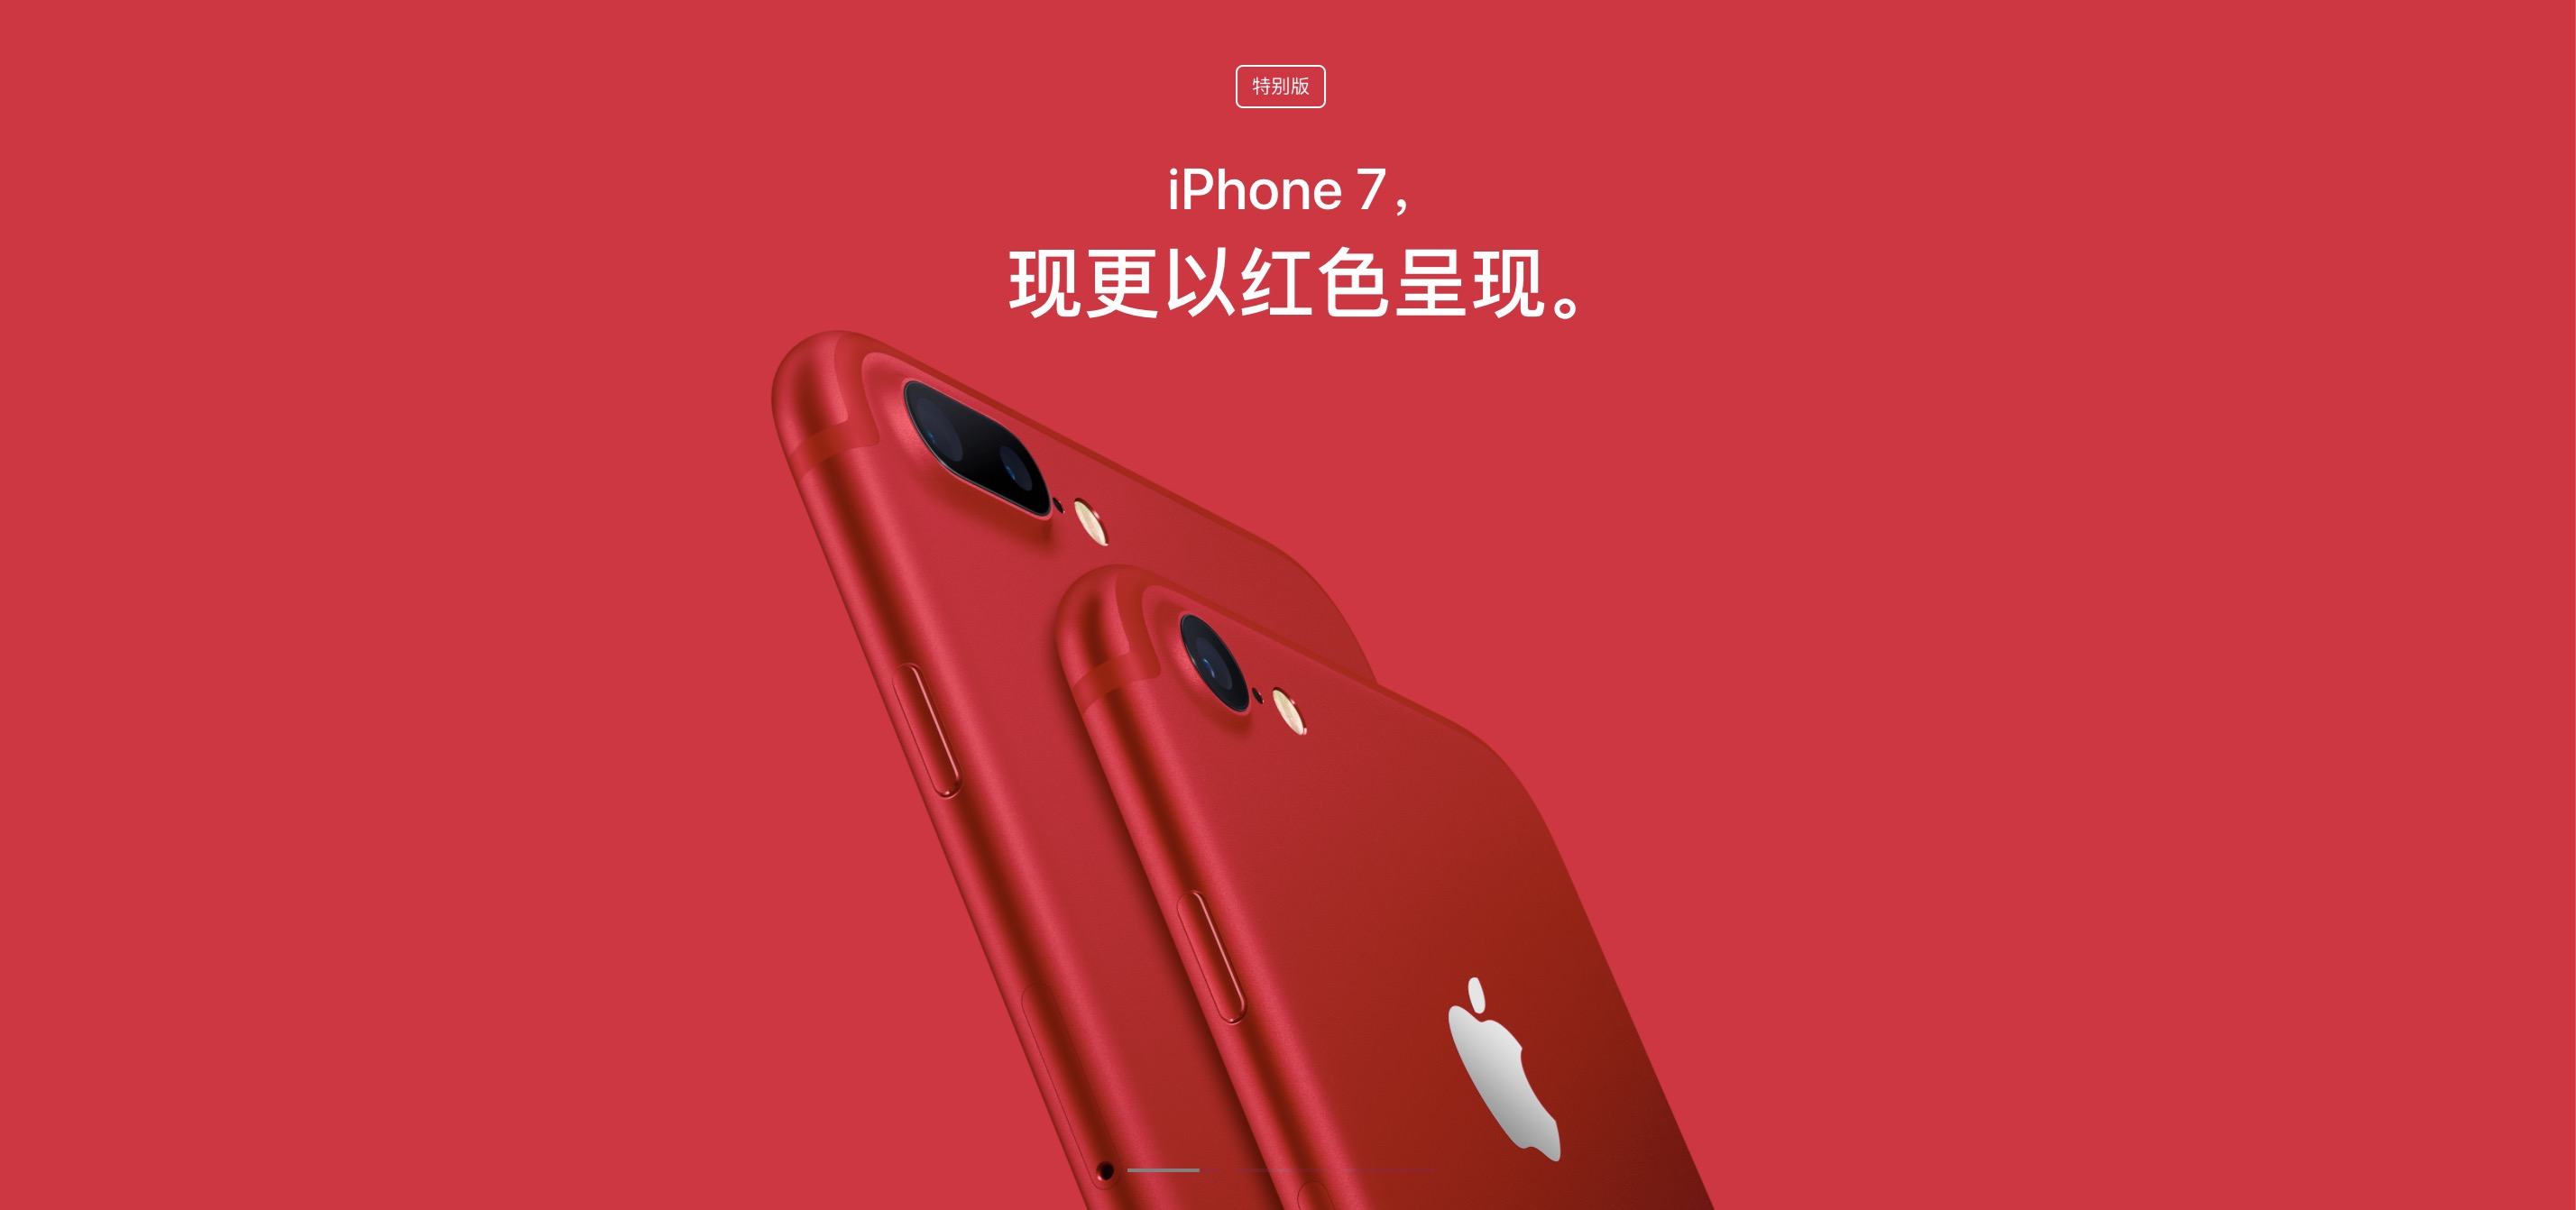 红色 iPhone 7/7 Plus、9.7寸 iPad 正式开售